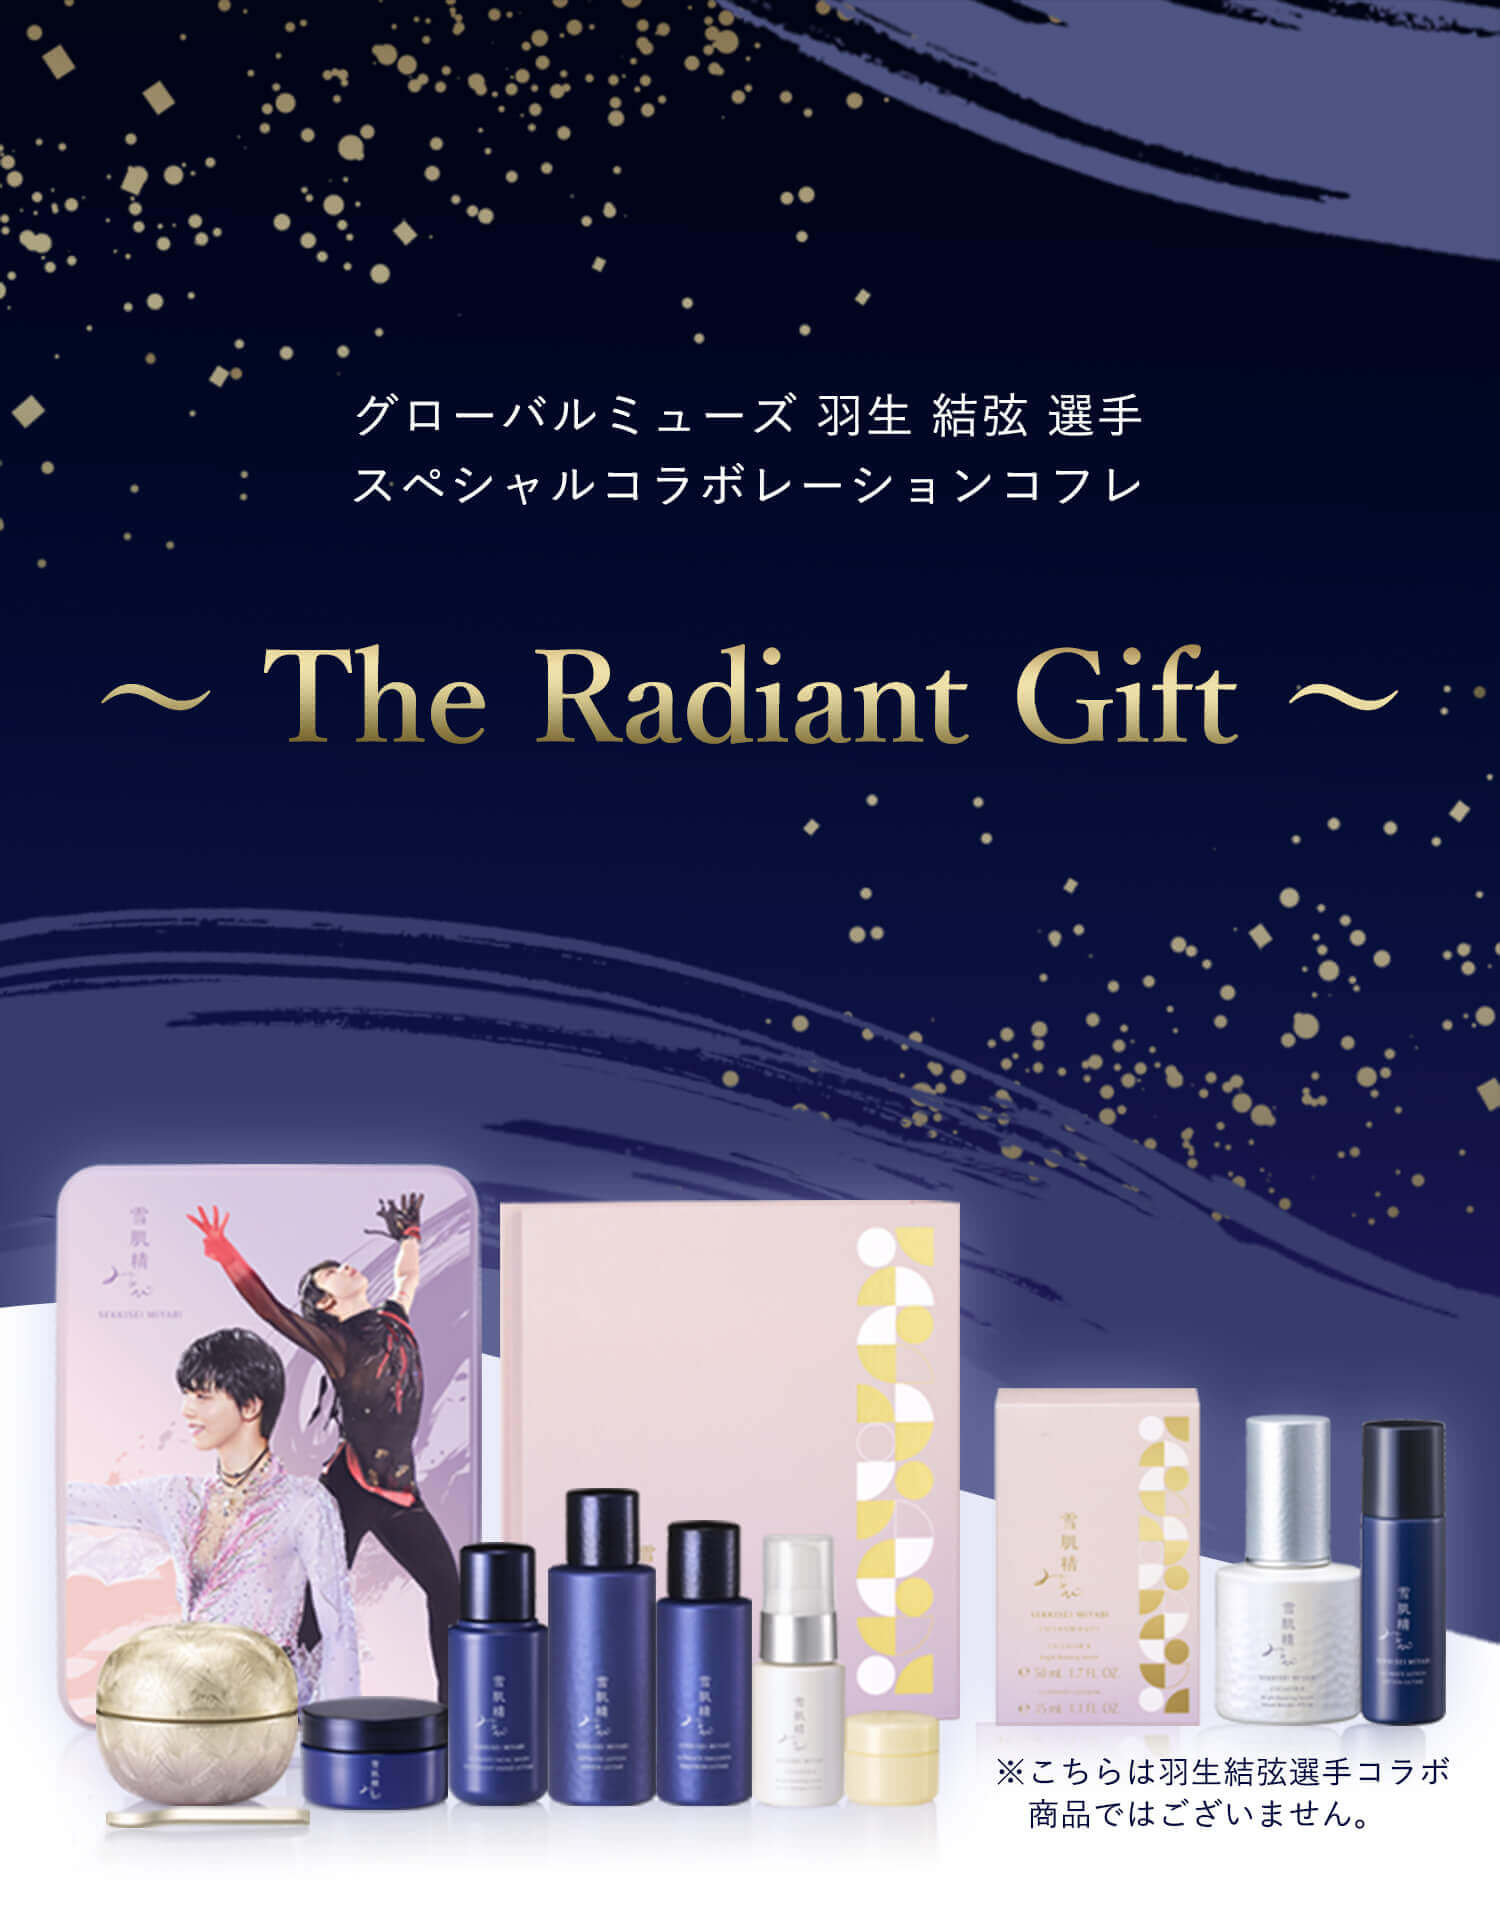 スペシャルコラボレーションコフレ The Radiant Gift